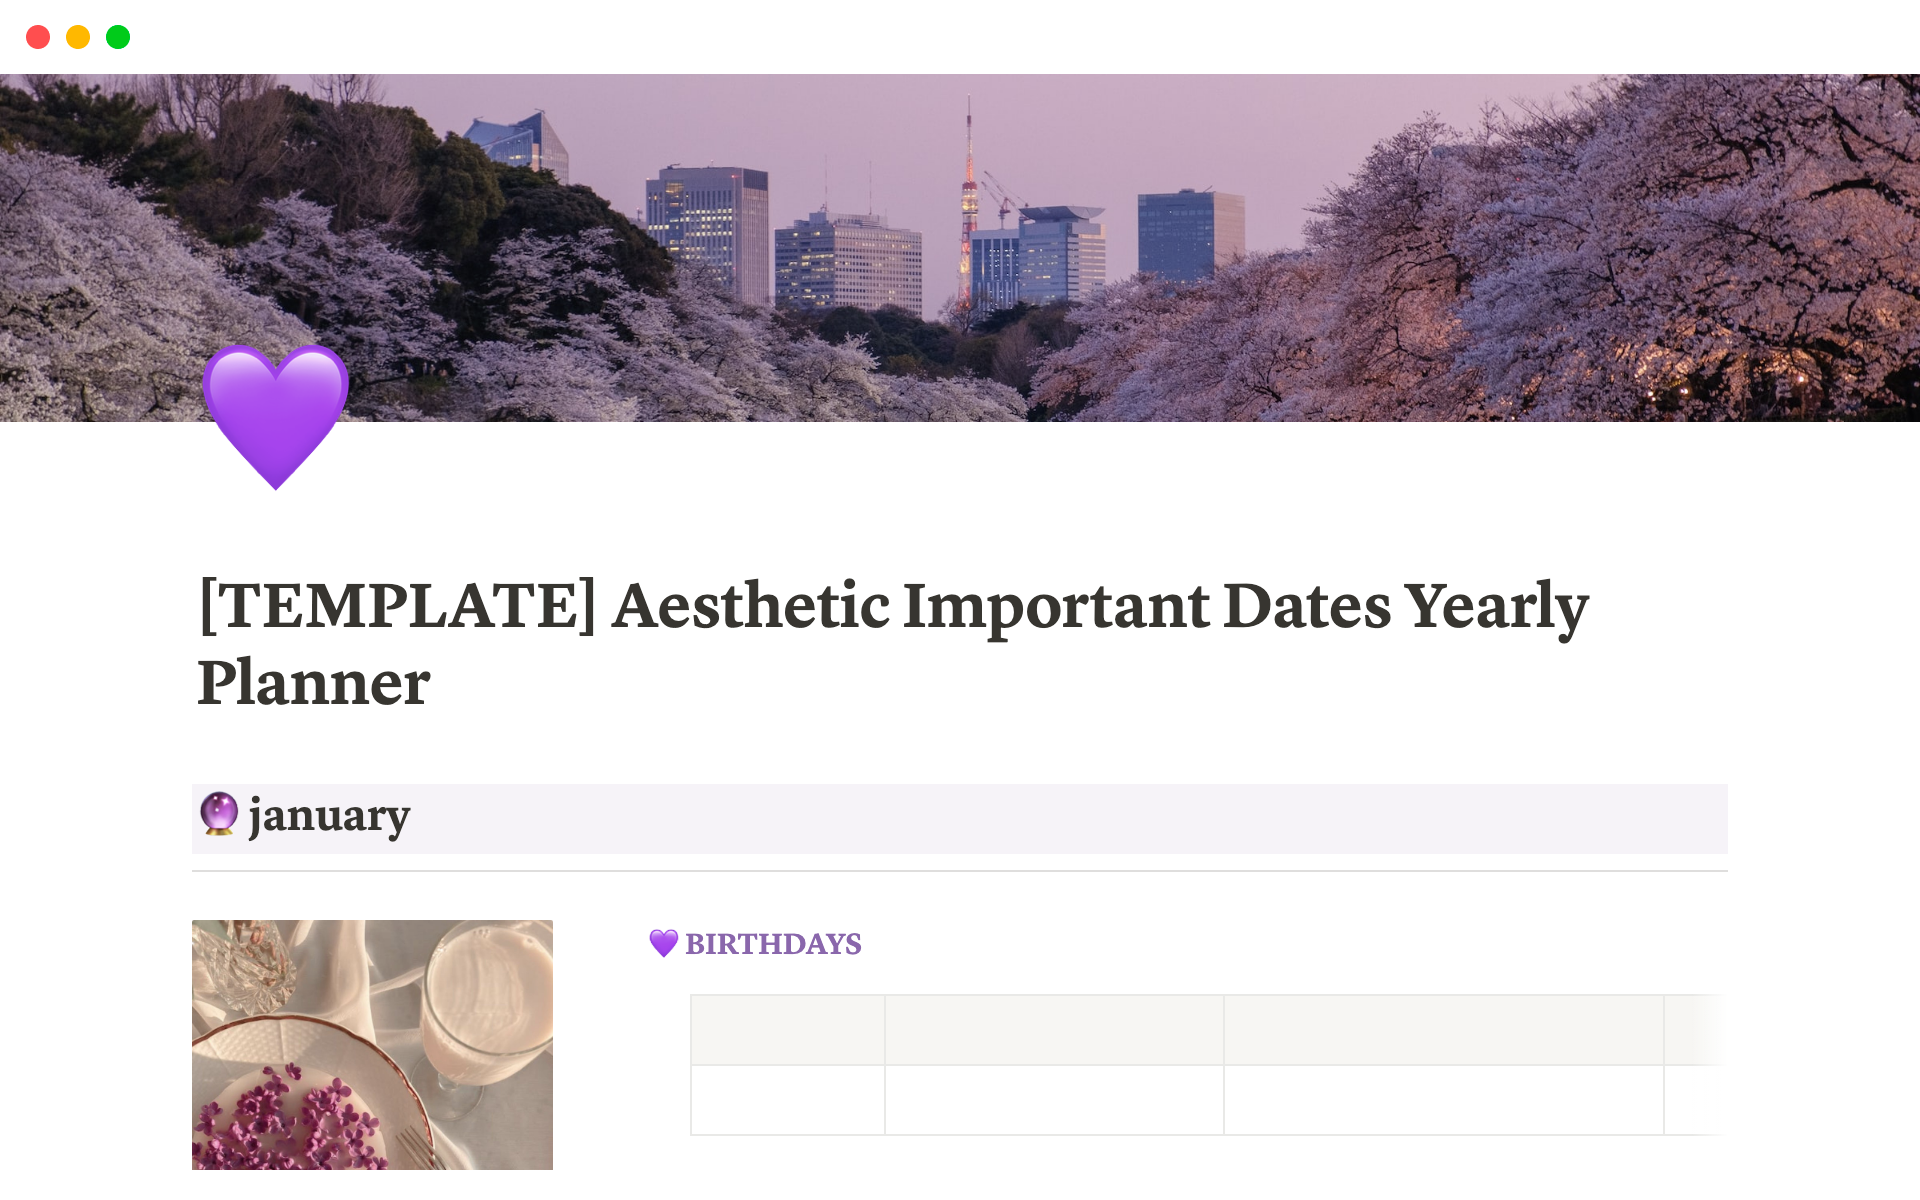 Vista previa de una plantilla para Aesthetic Important Dates Yearly Planner